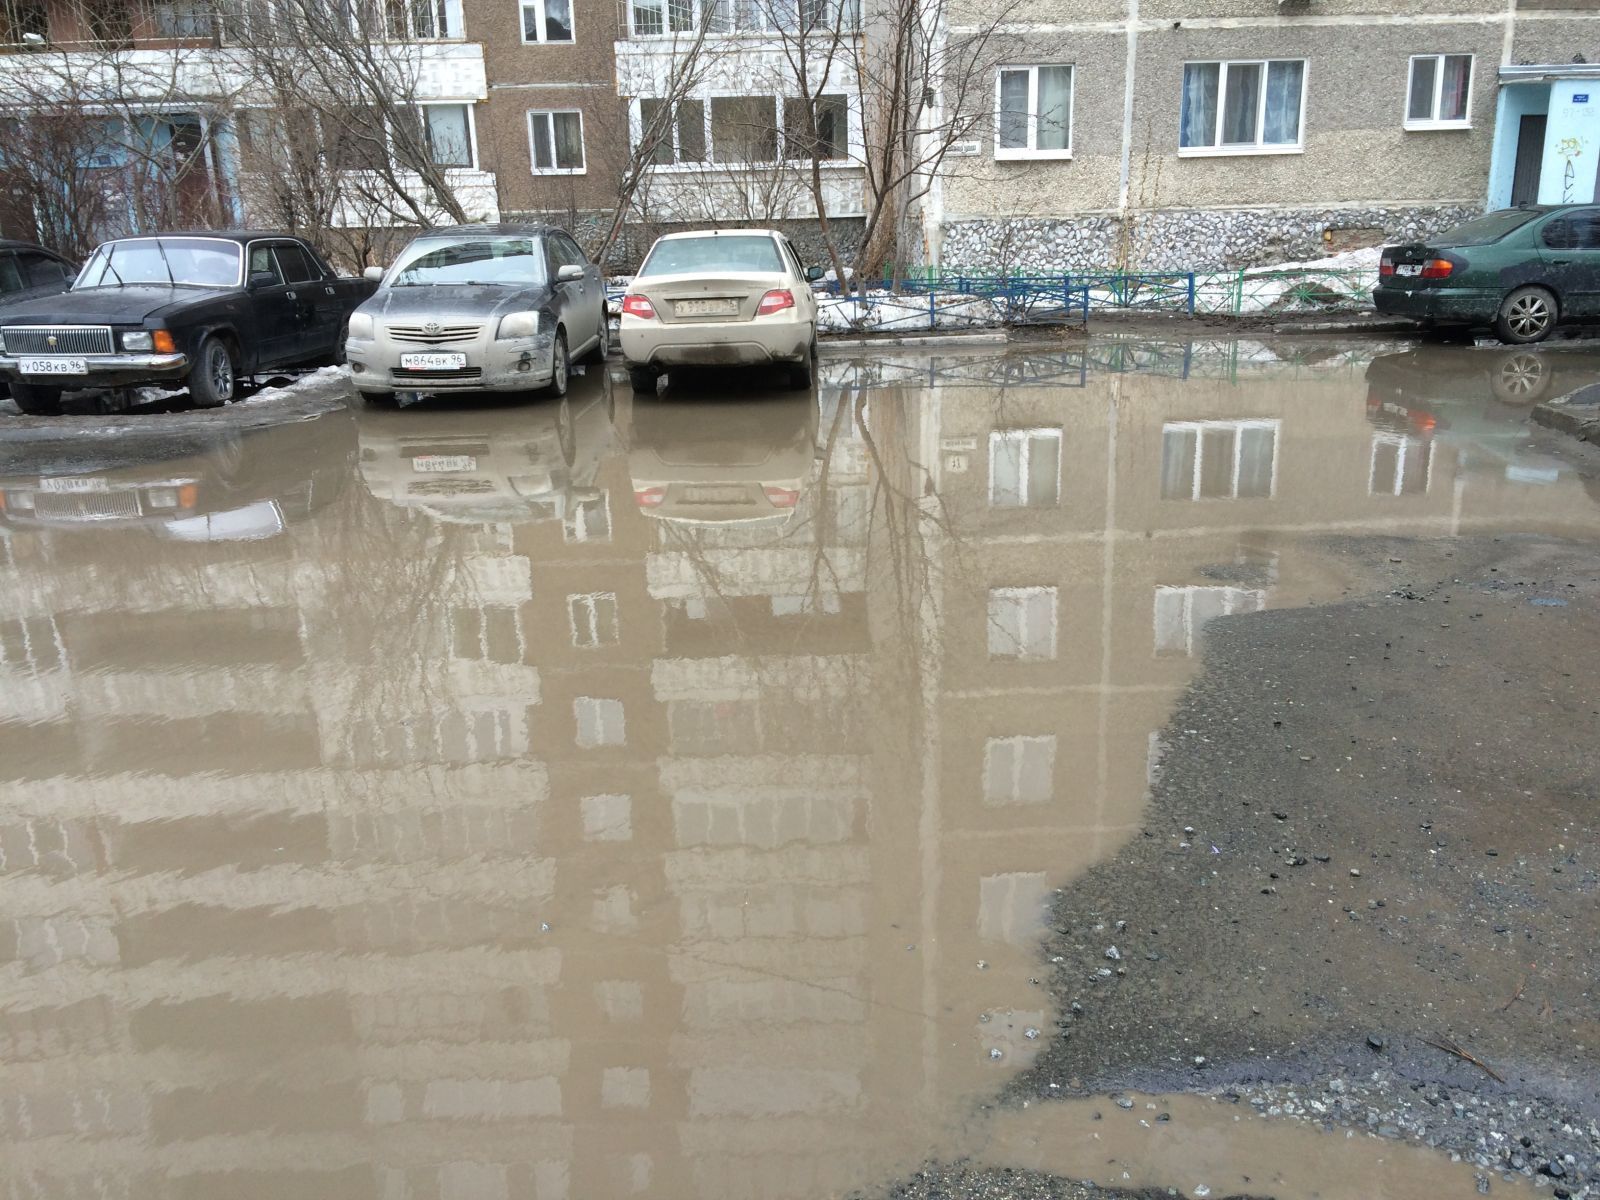 Екатеринбург утопает в грязи